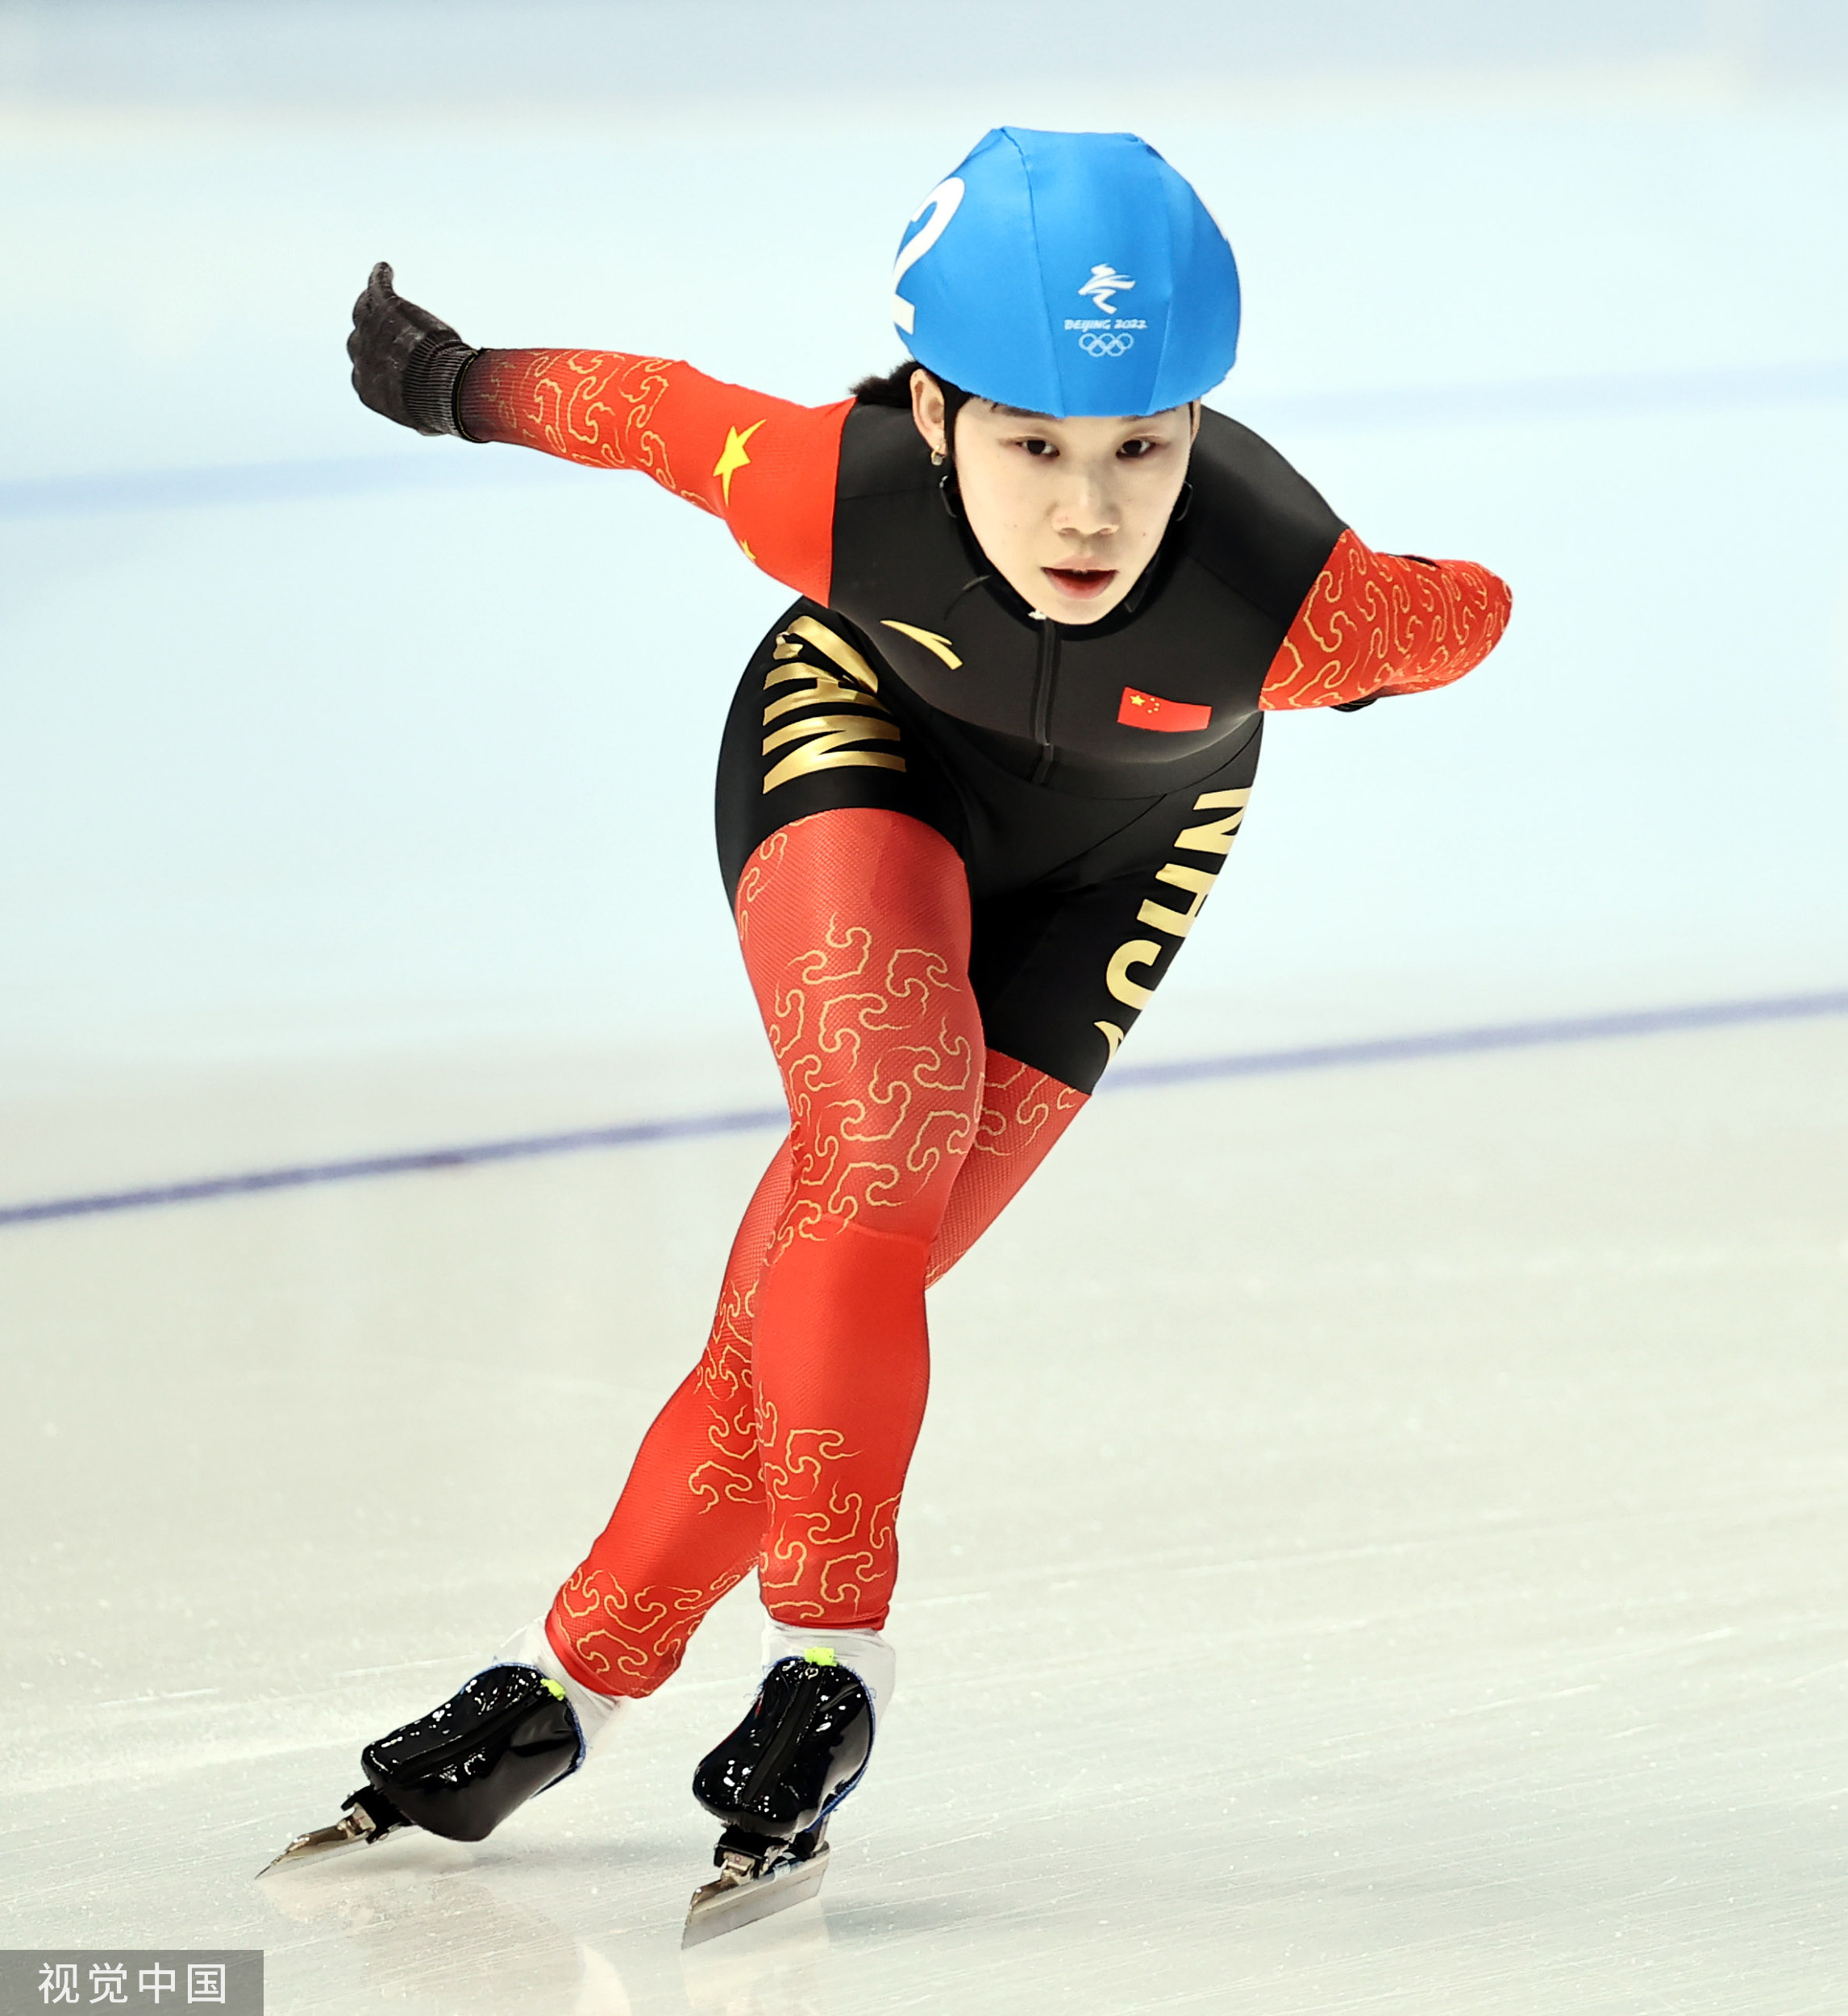 轮滑速滑她是中国首位轮冰双栖运动员亚运旗手郭丹